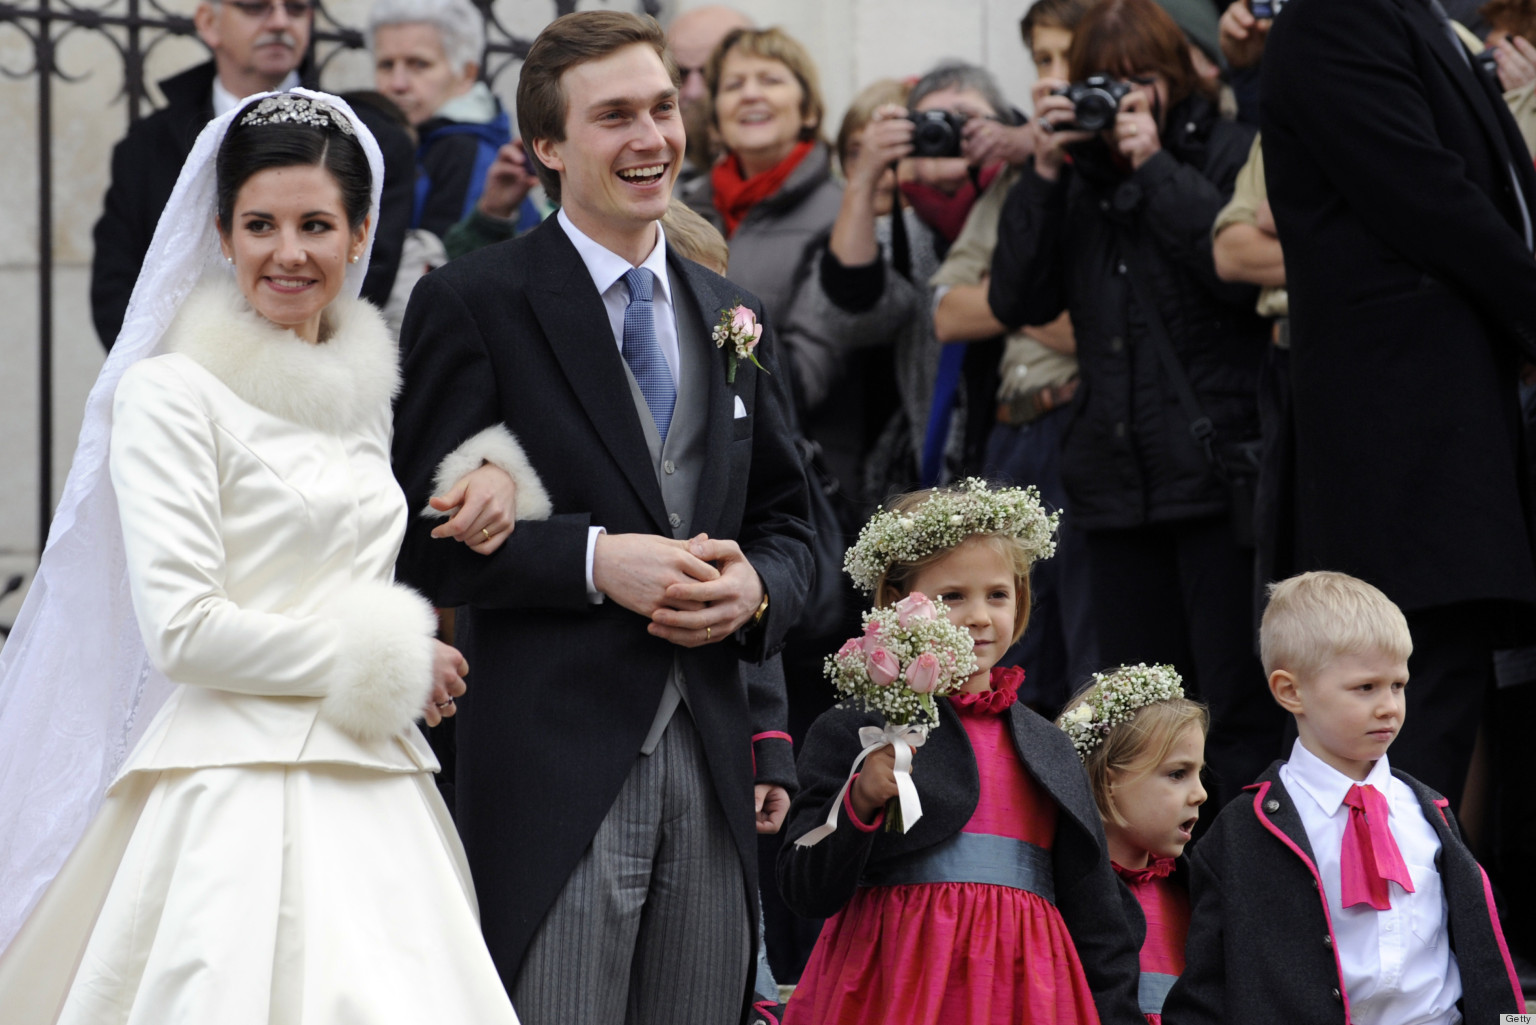 o-AUSTRIA-ROYAL-WEDDING-facebook.jpg